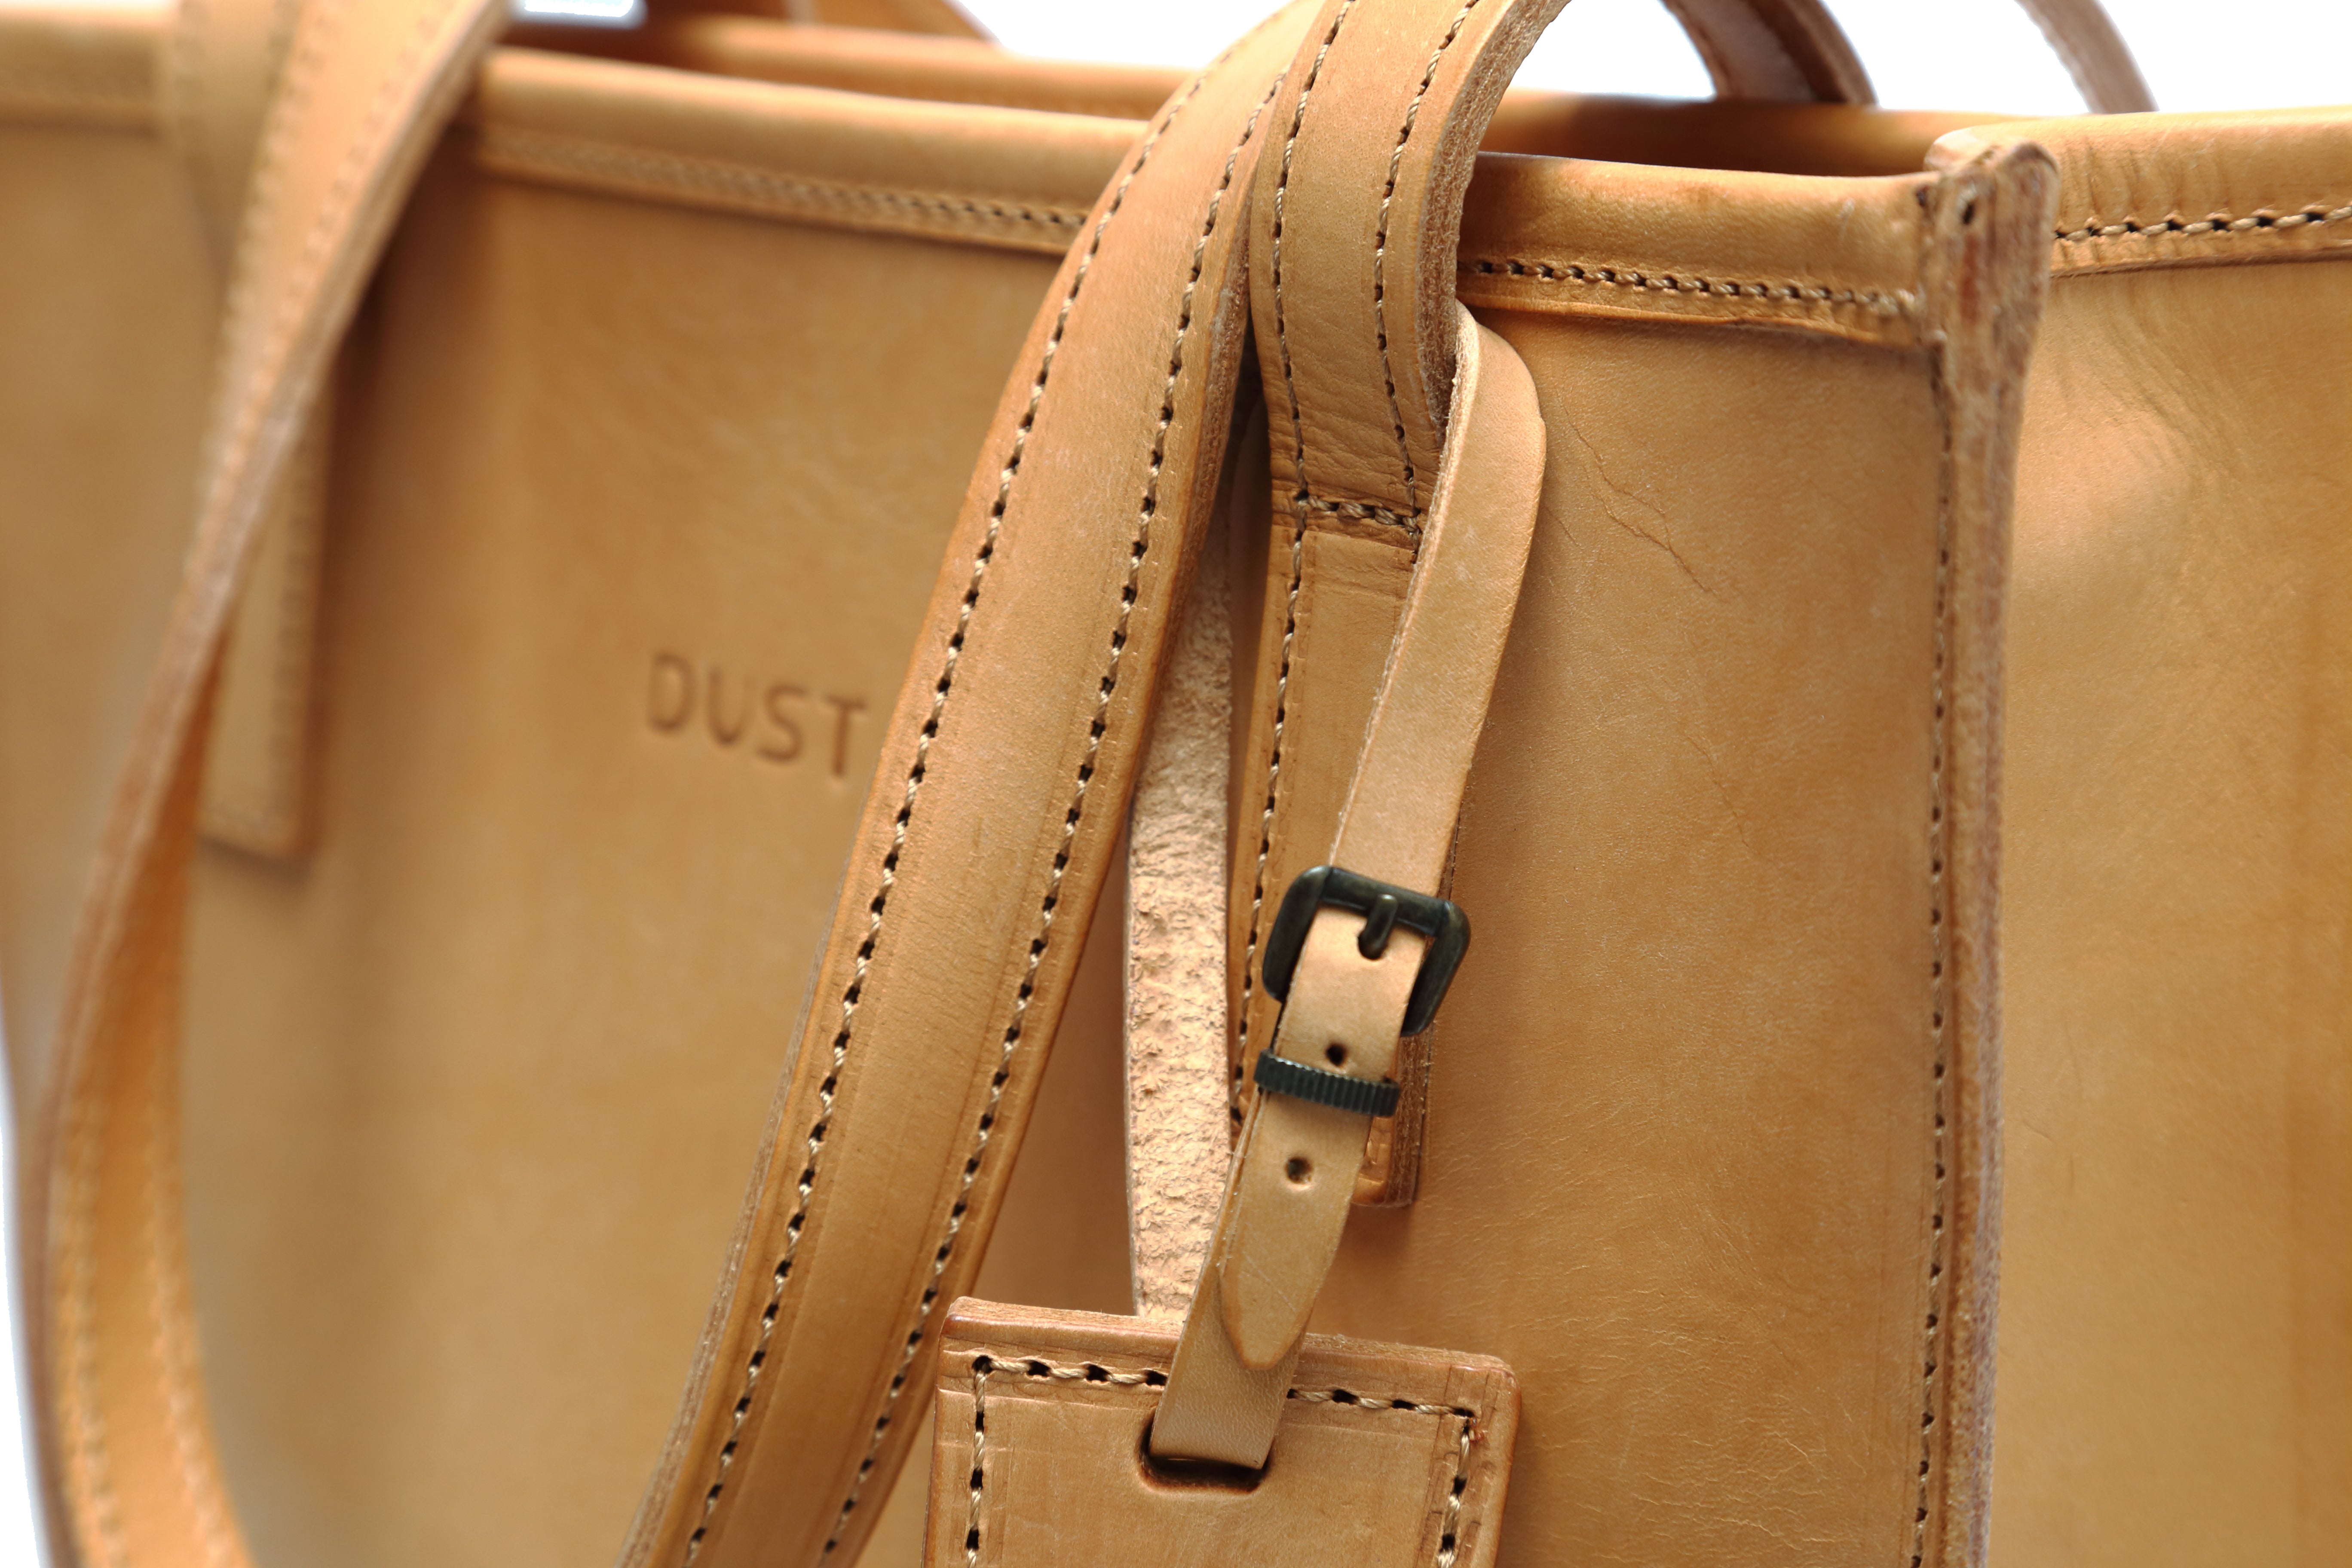 Leather Tote Bag The Dust Company su Artisia Store